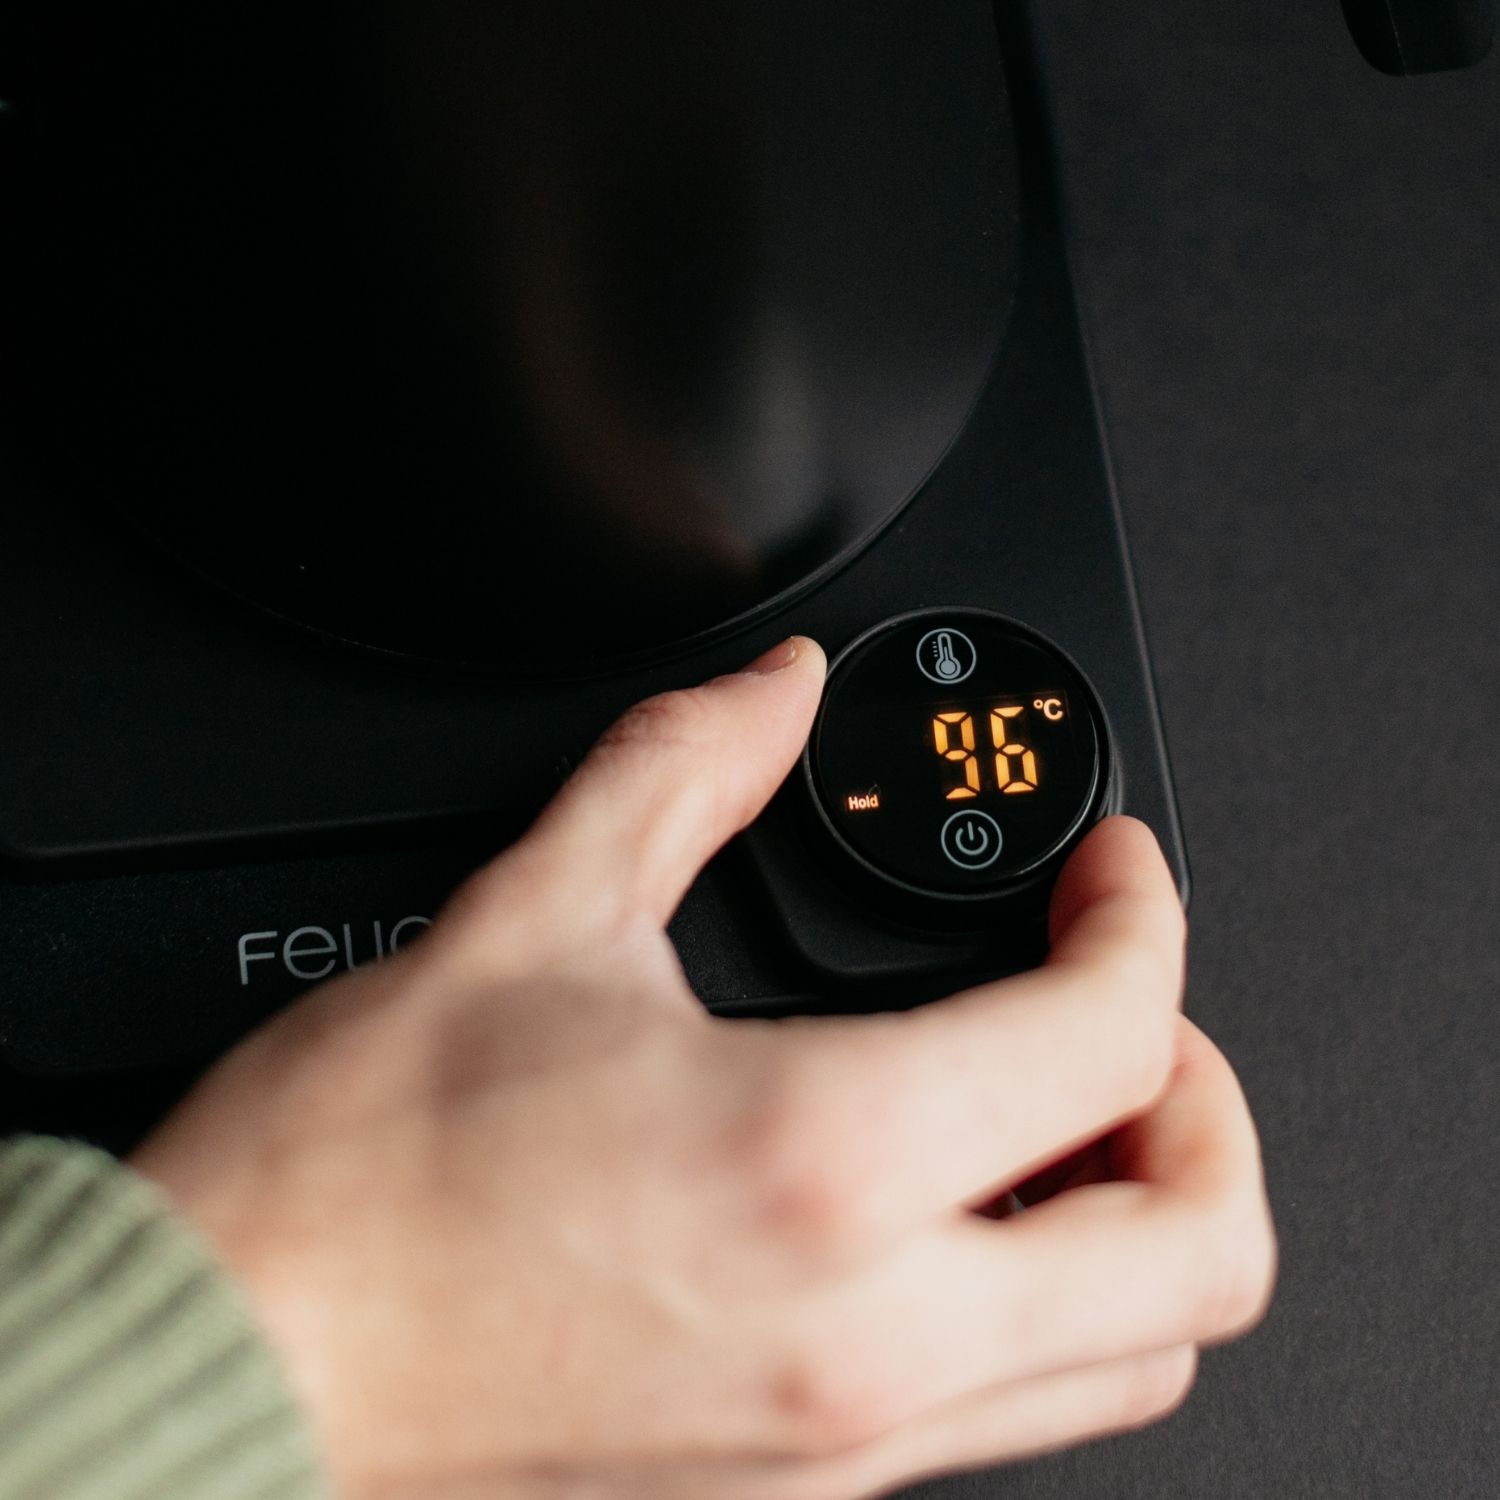 Felicita Square Temperature Control Electric Kettle - The Fine